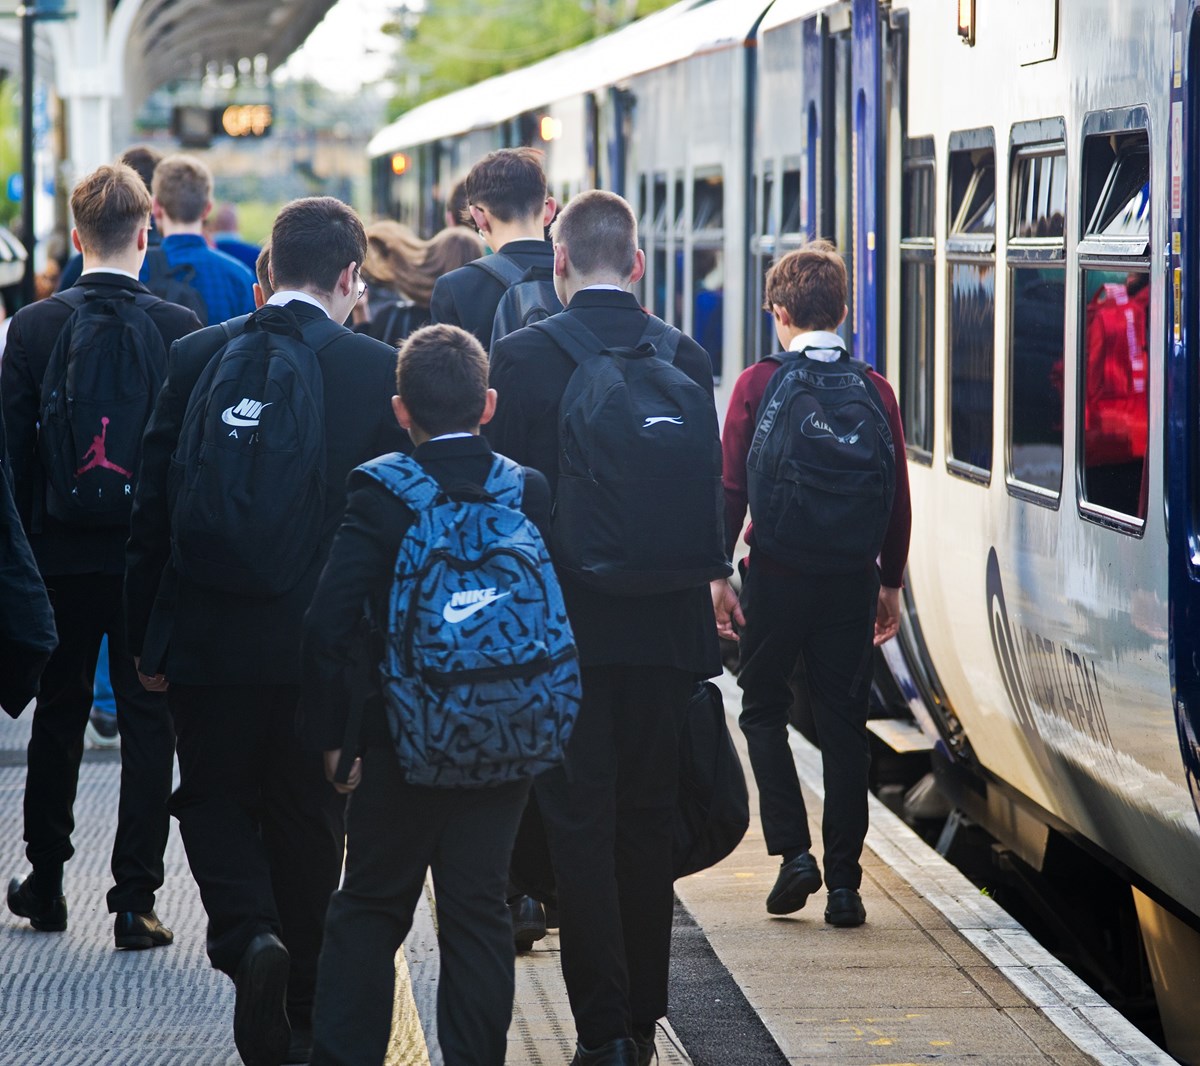 Image shows schoolchildren commuting to school